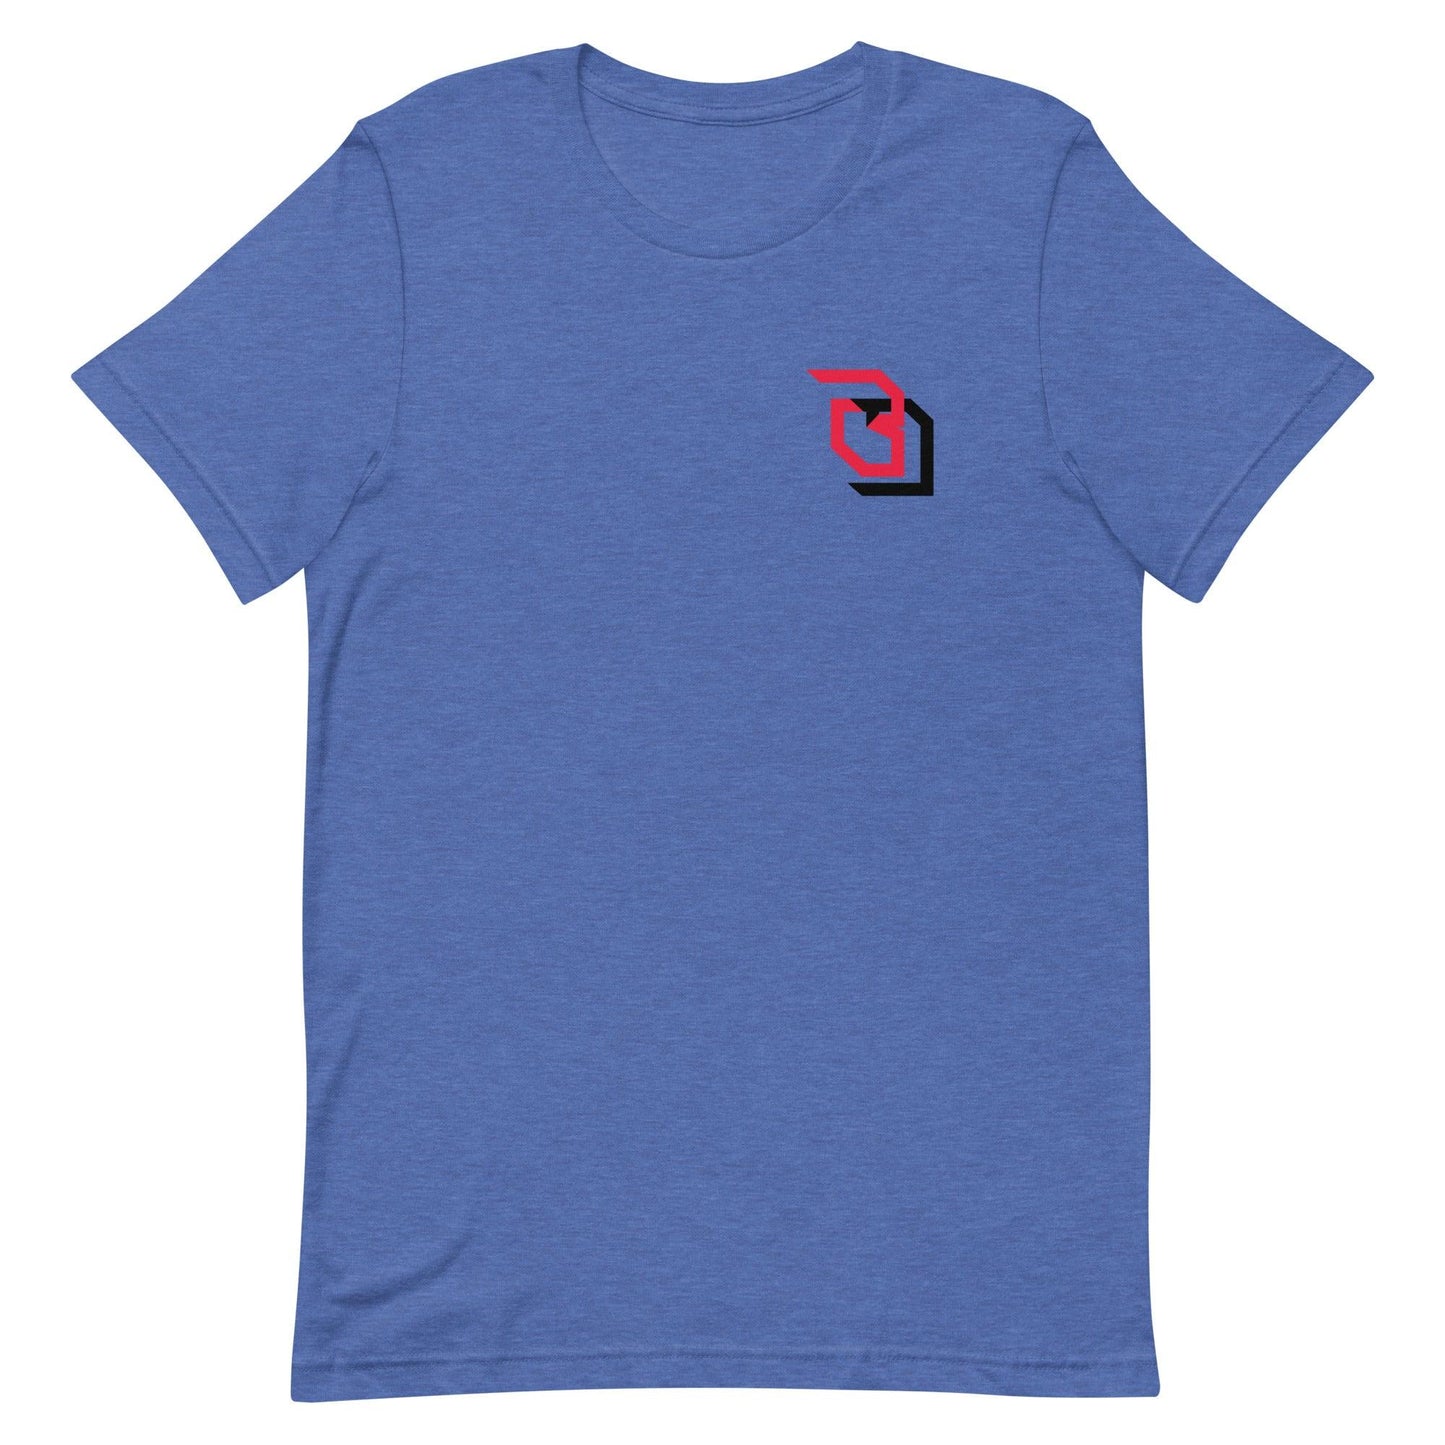 Brady Drogosh "Essential" t-shirt - Fan Arch